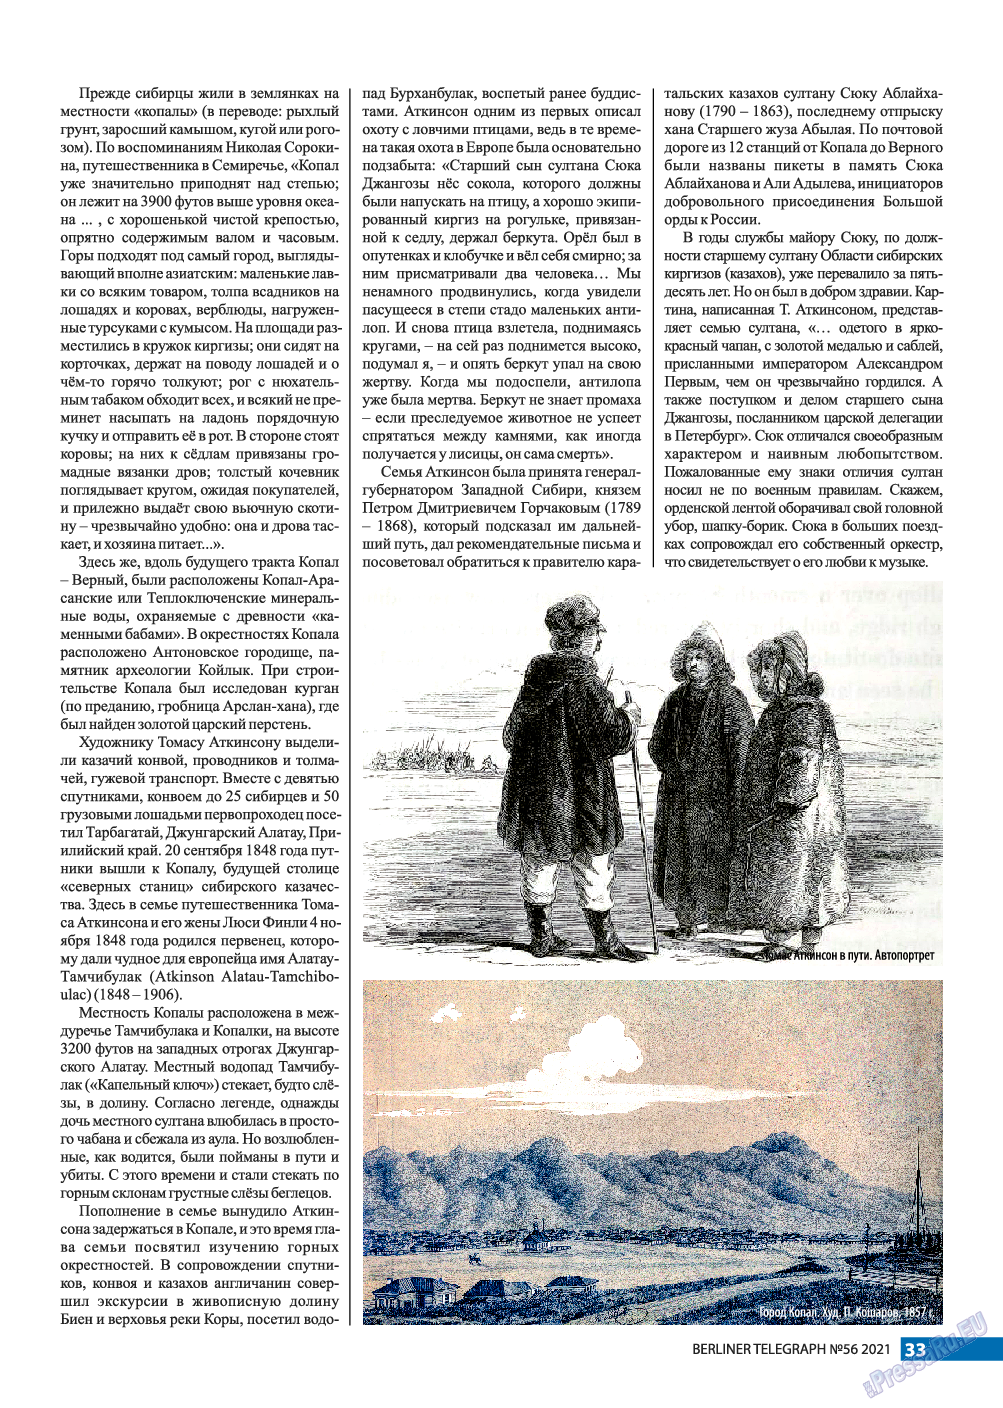 Берлинский телеграф, журнал. 2021 №56 стр.33